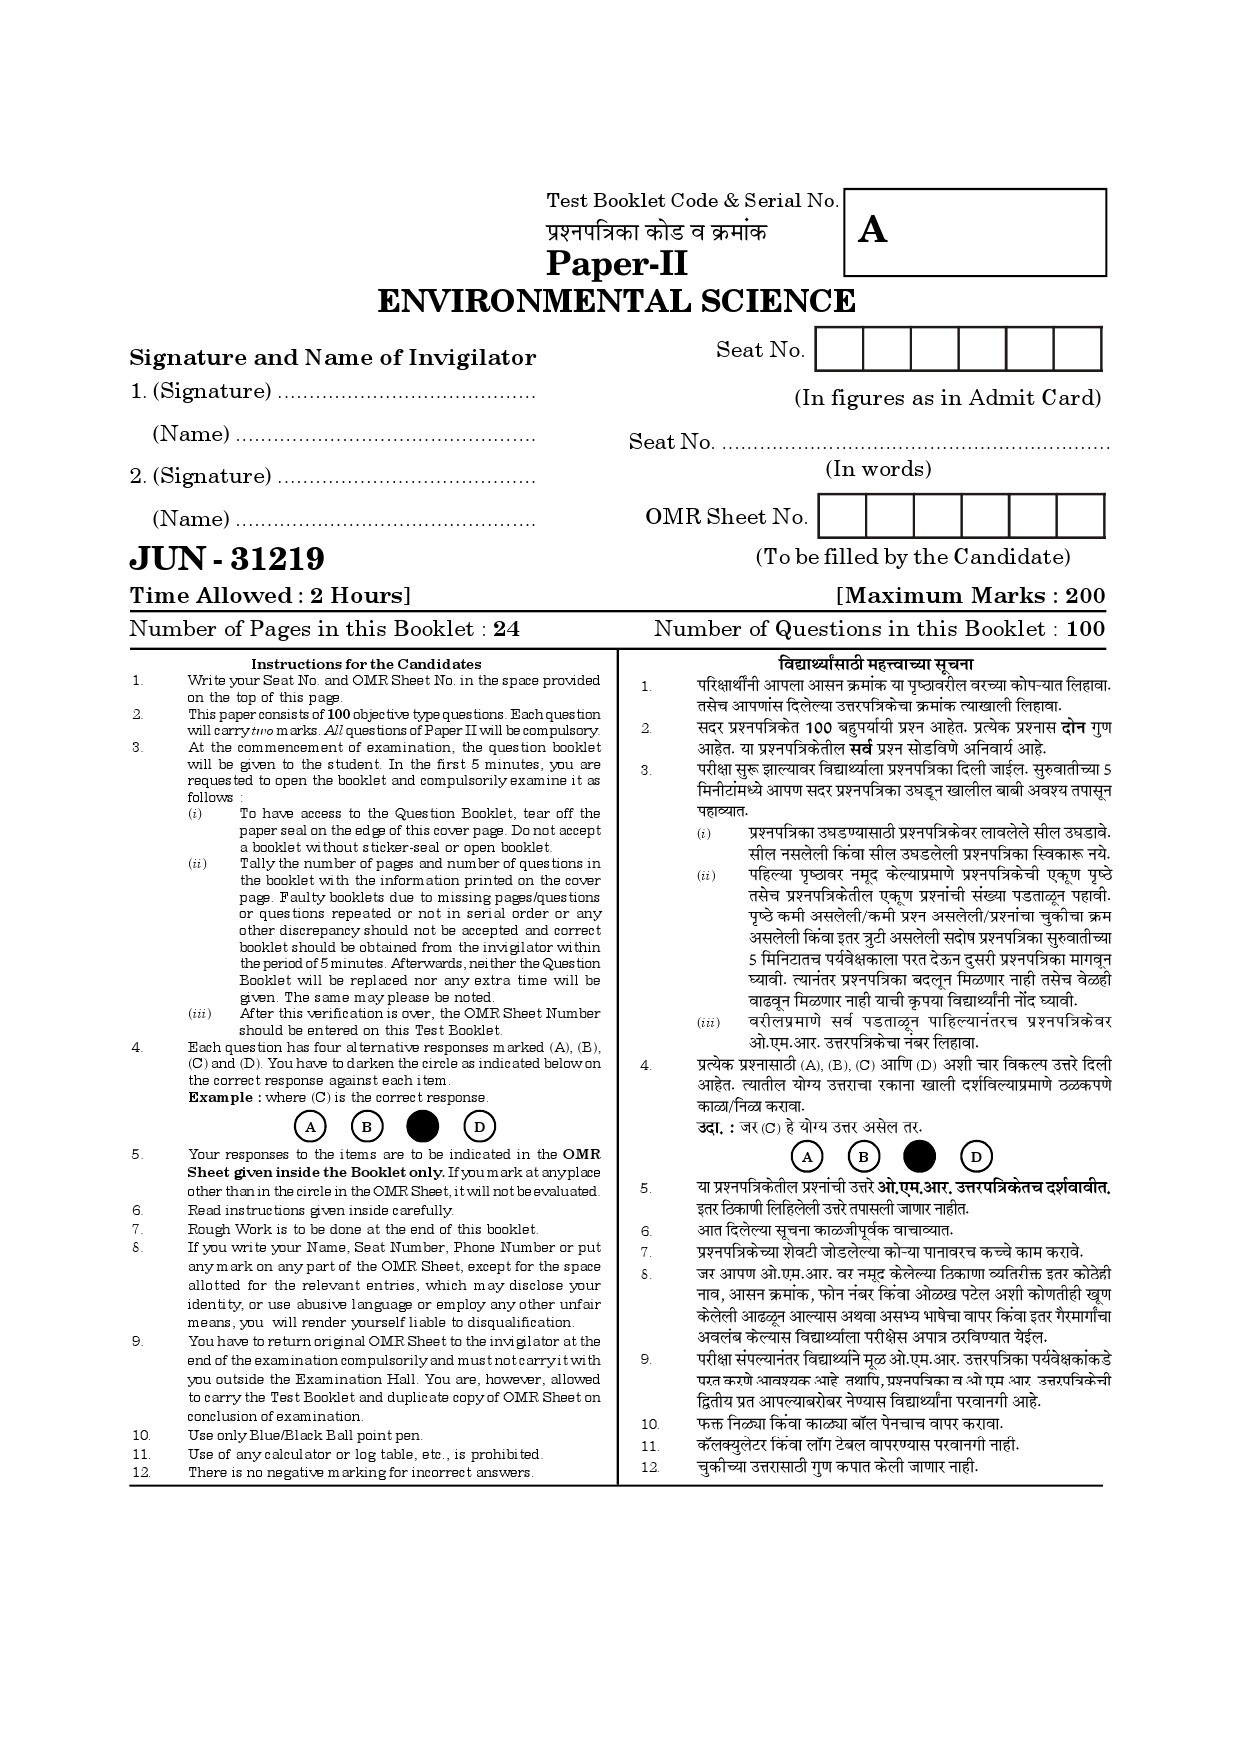 Maharashtra SET Environmental Sciences Question Paper II June 2019 1